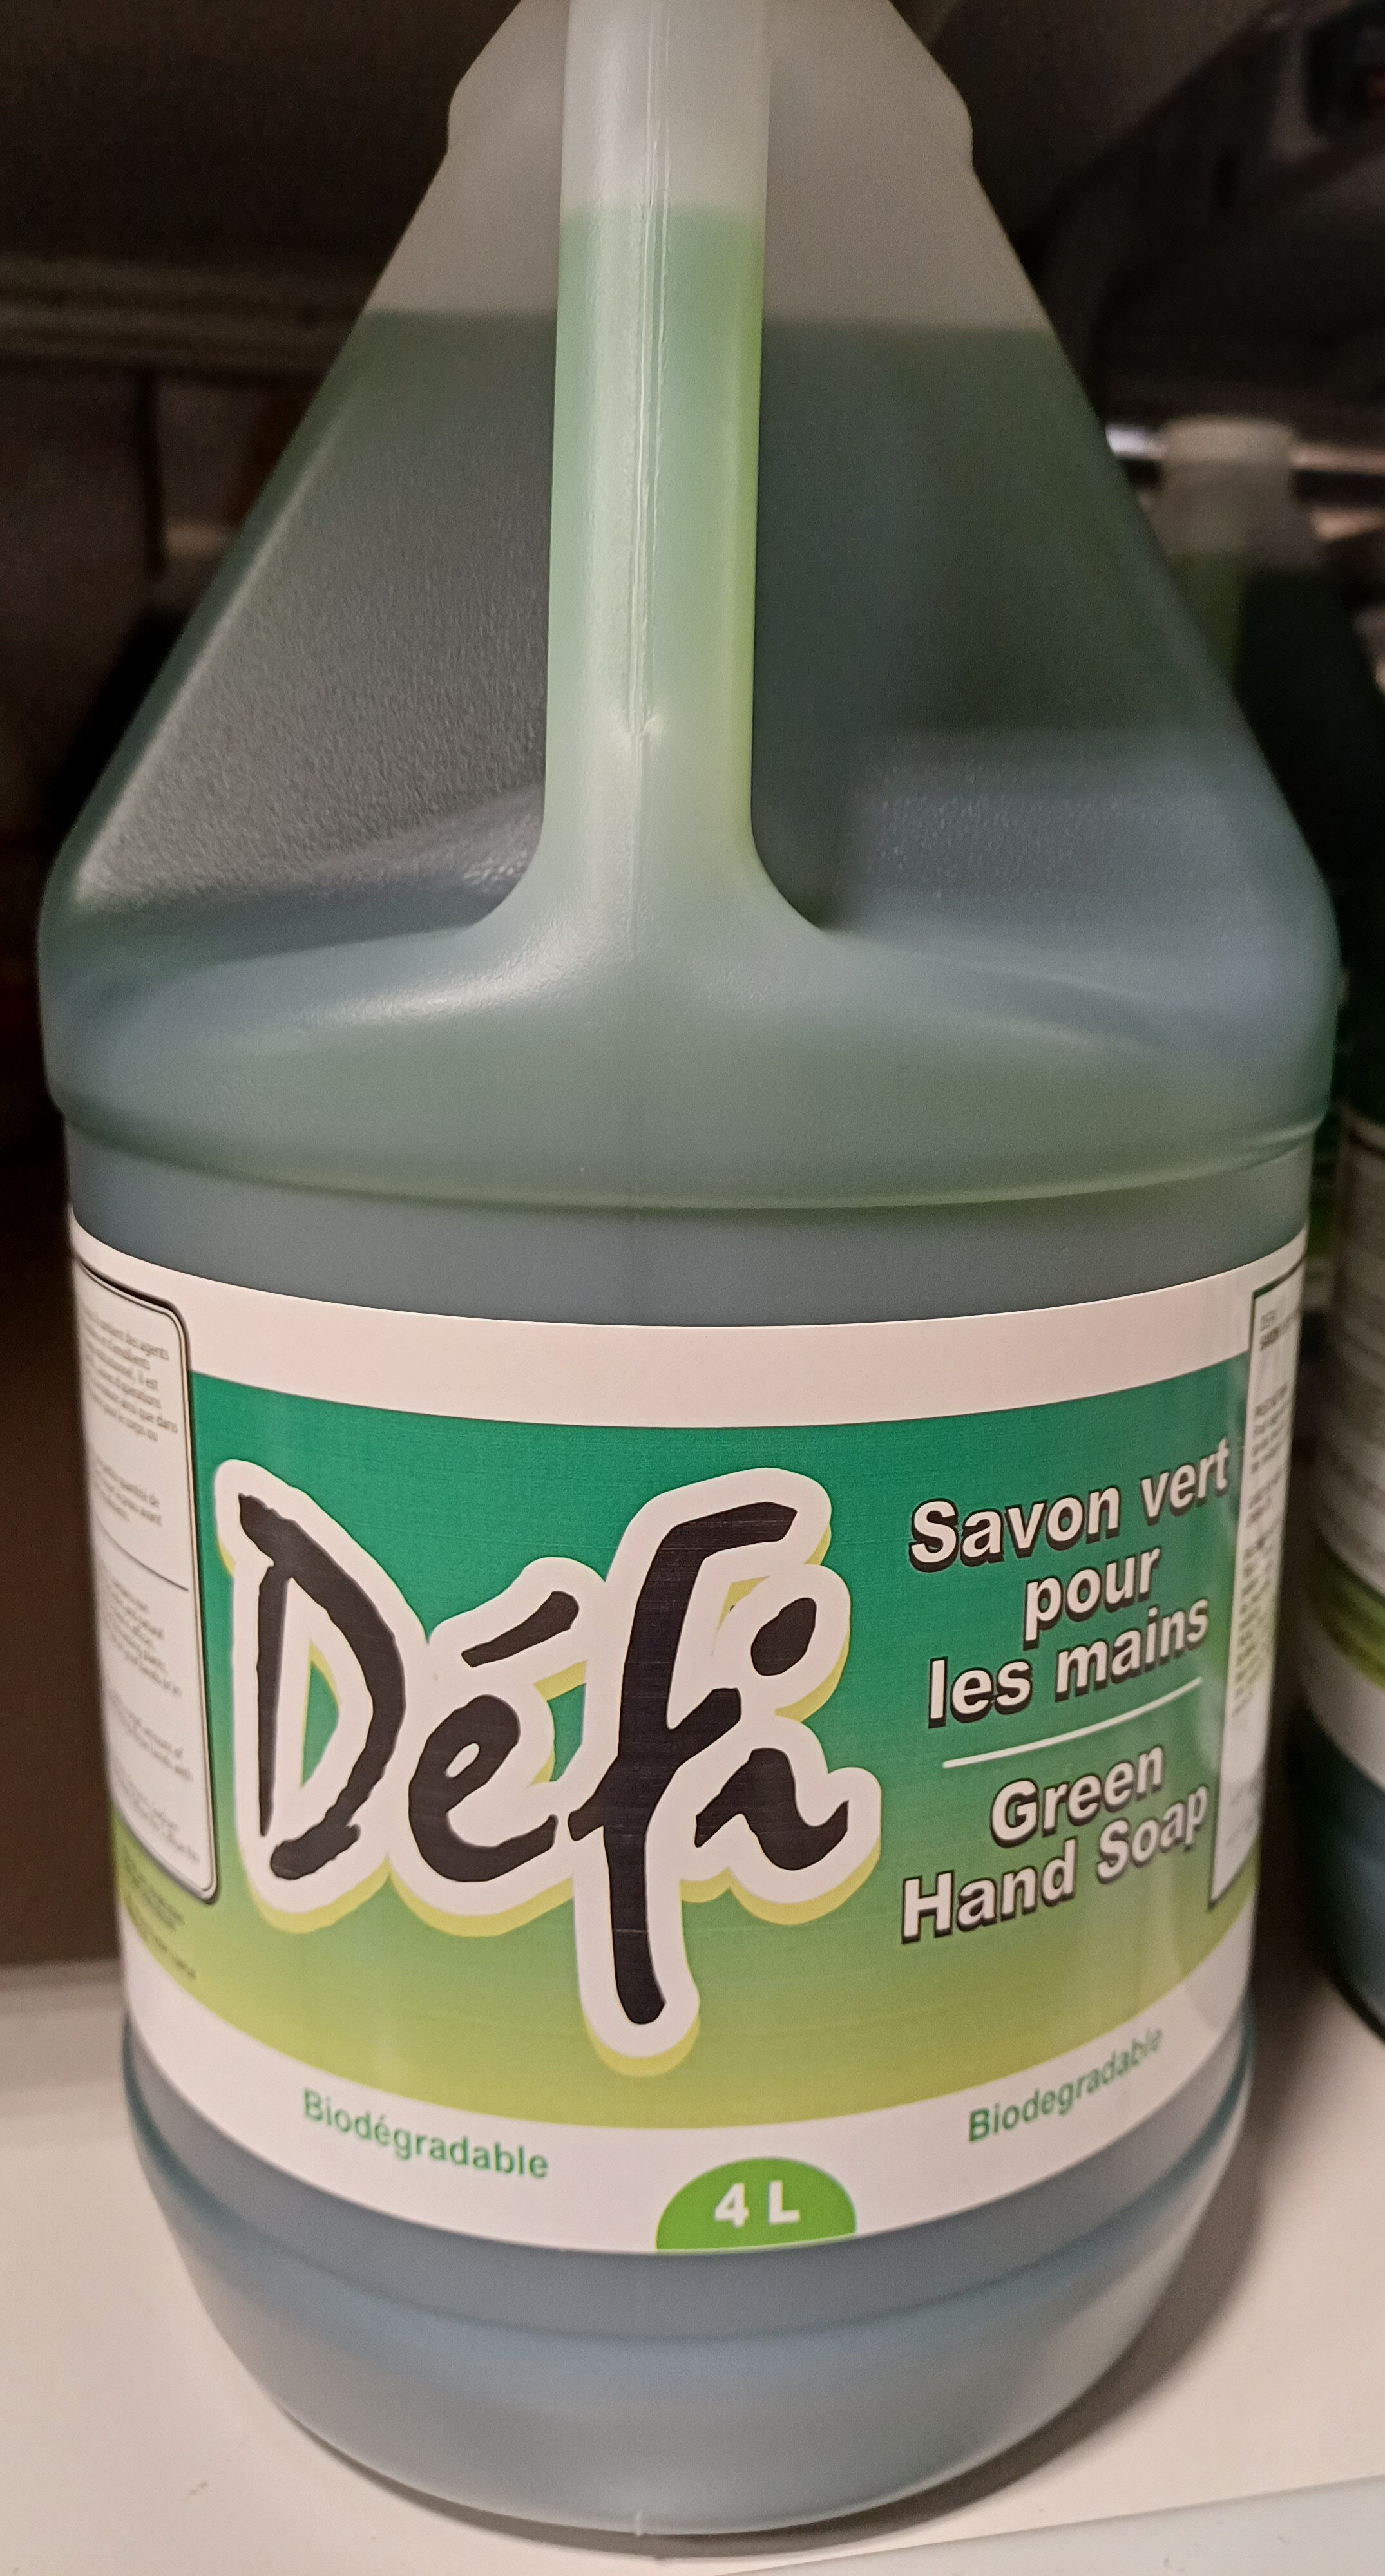 savon vert pour les mains - Produit - fr